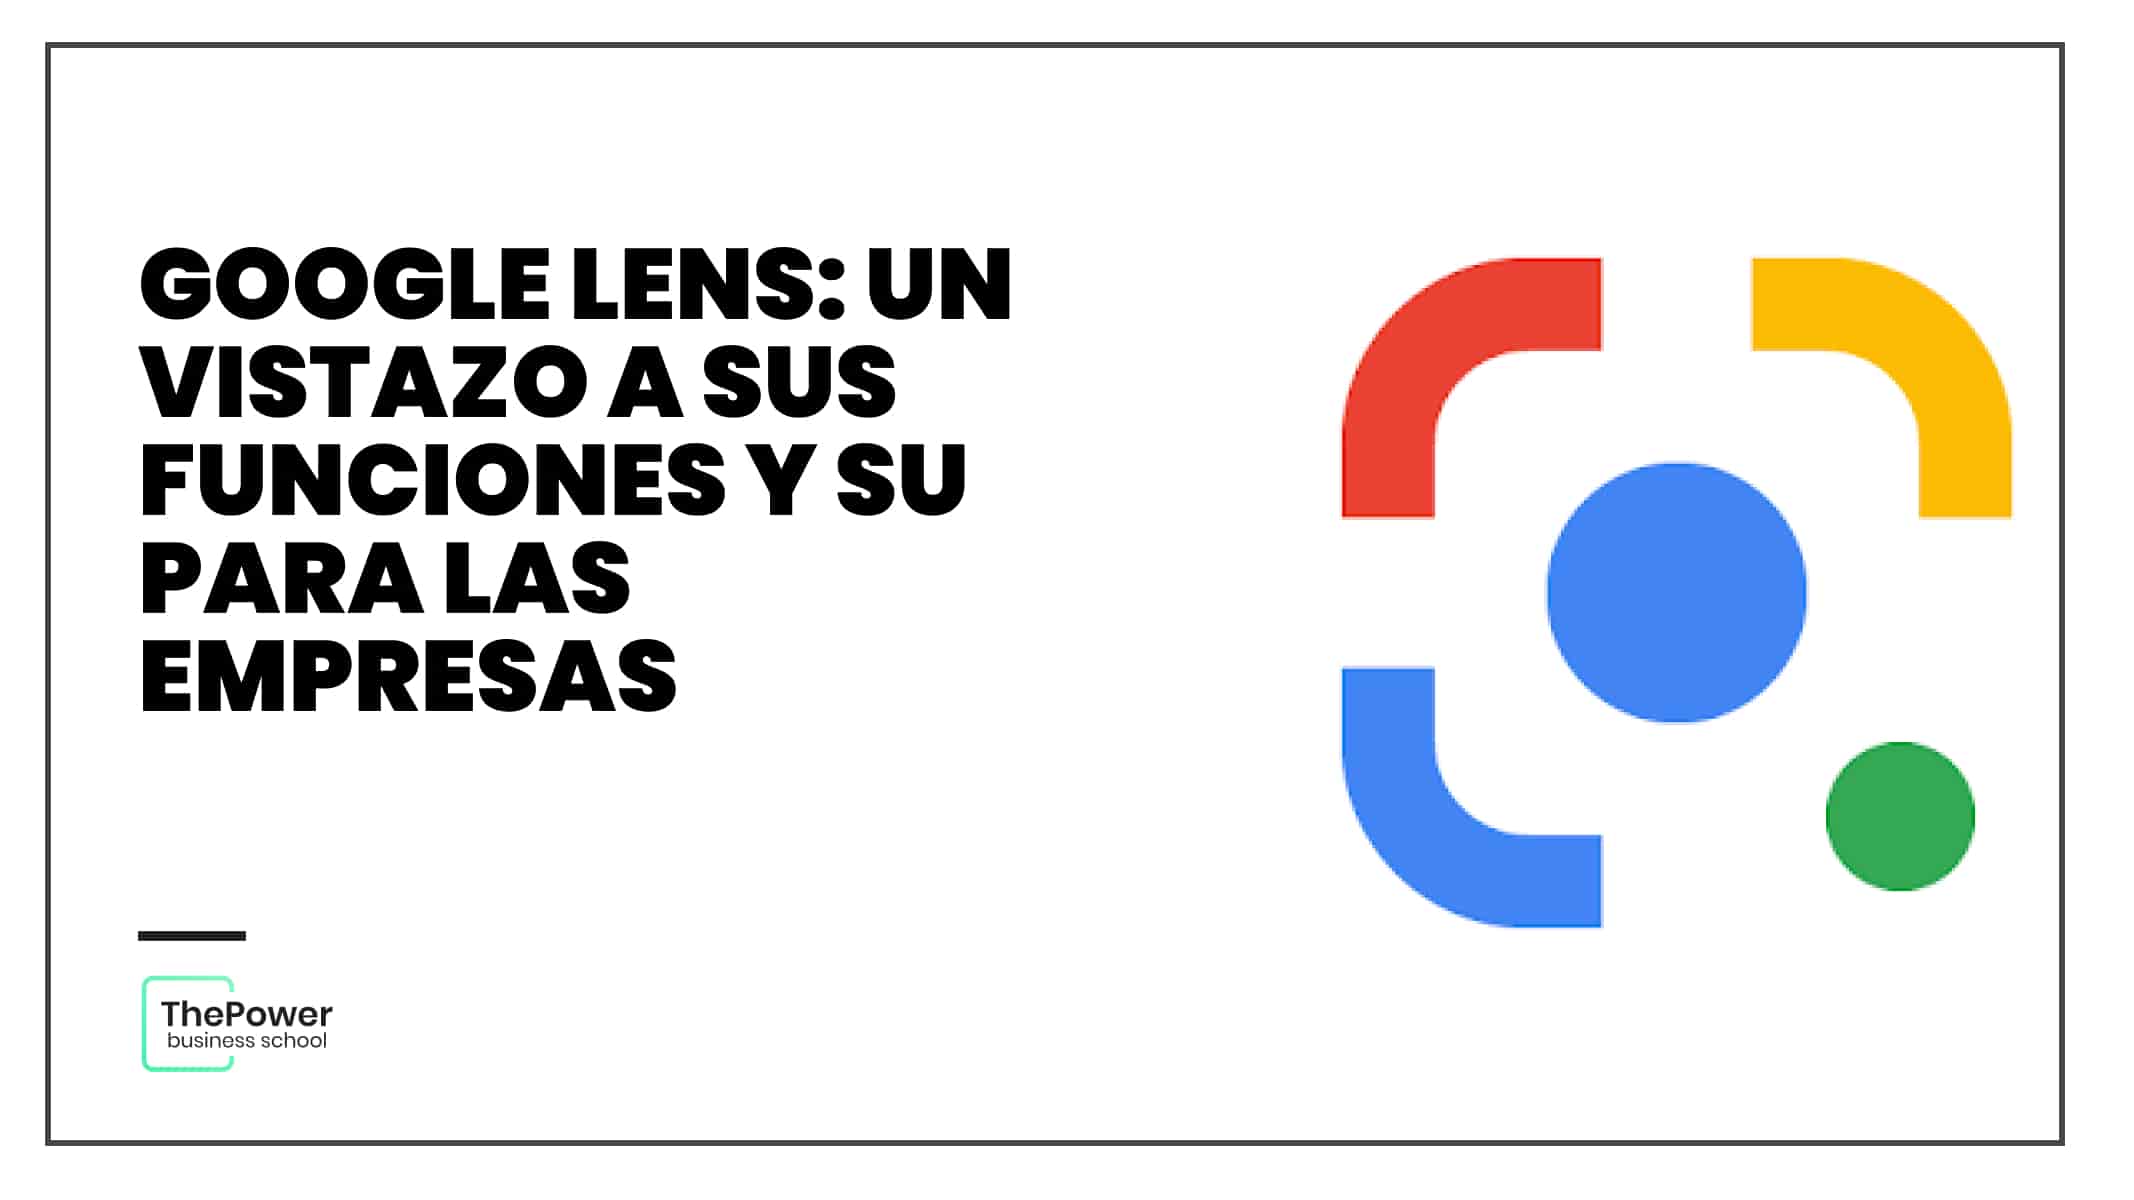 Google Lens: un vistazo a sus funciones y su para las empresas